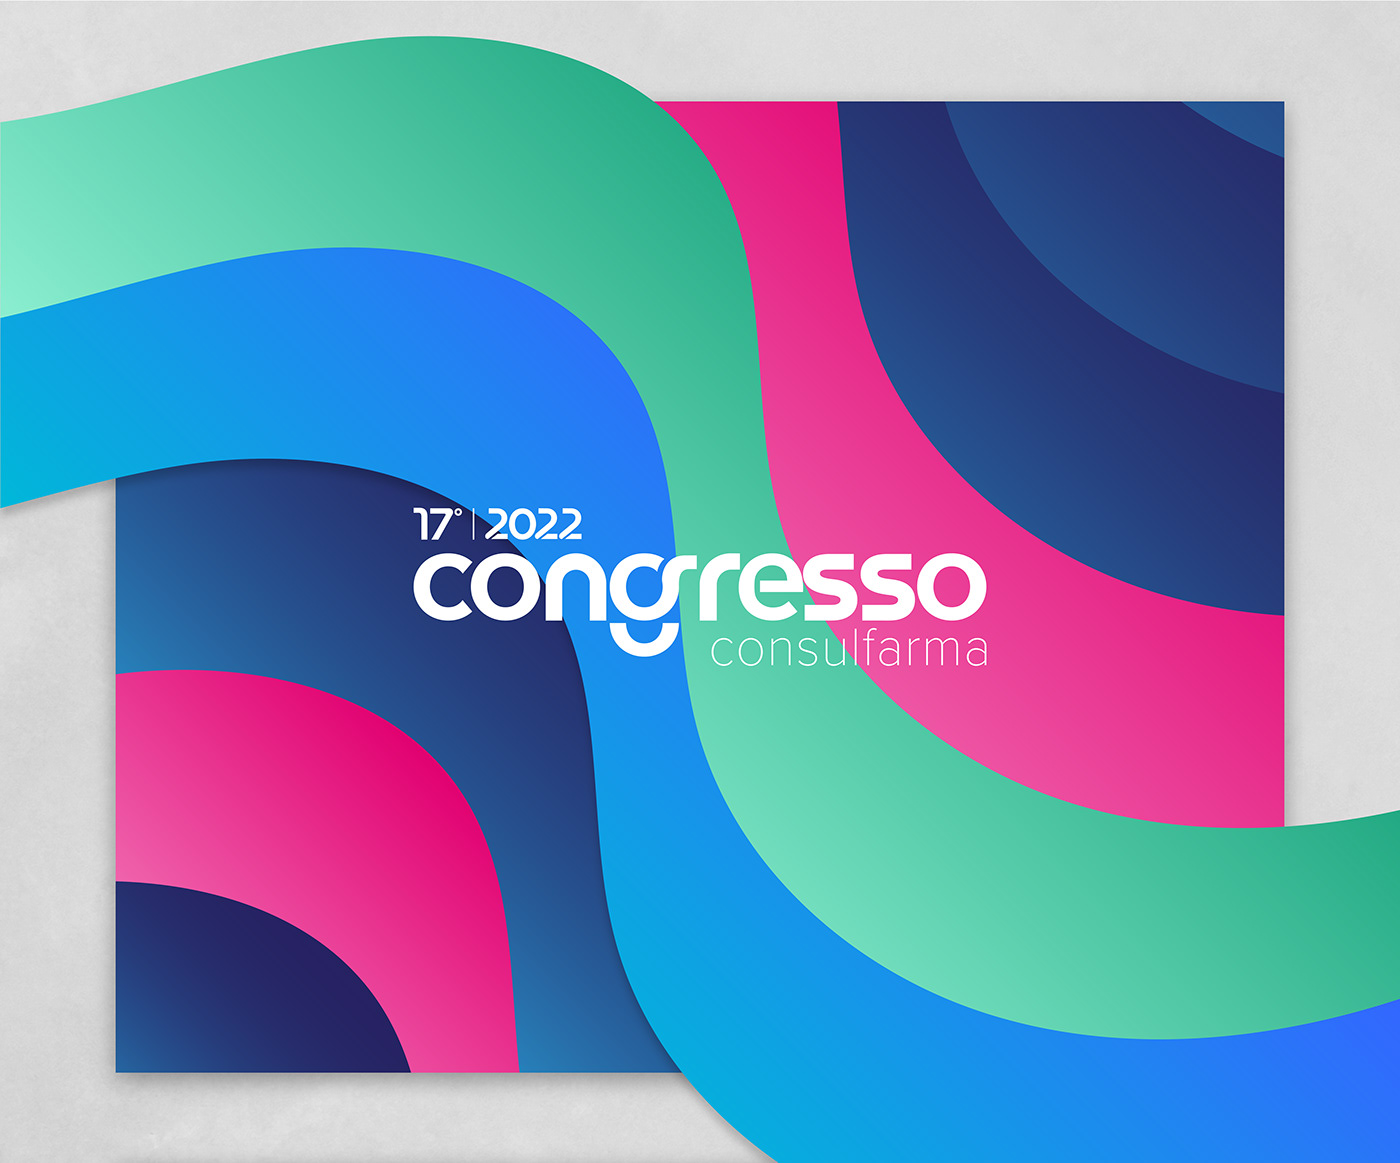 bussiness congress Congresso consulfarma Event Evento farmacia identidade visual identity pharmacy